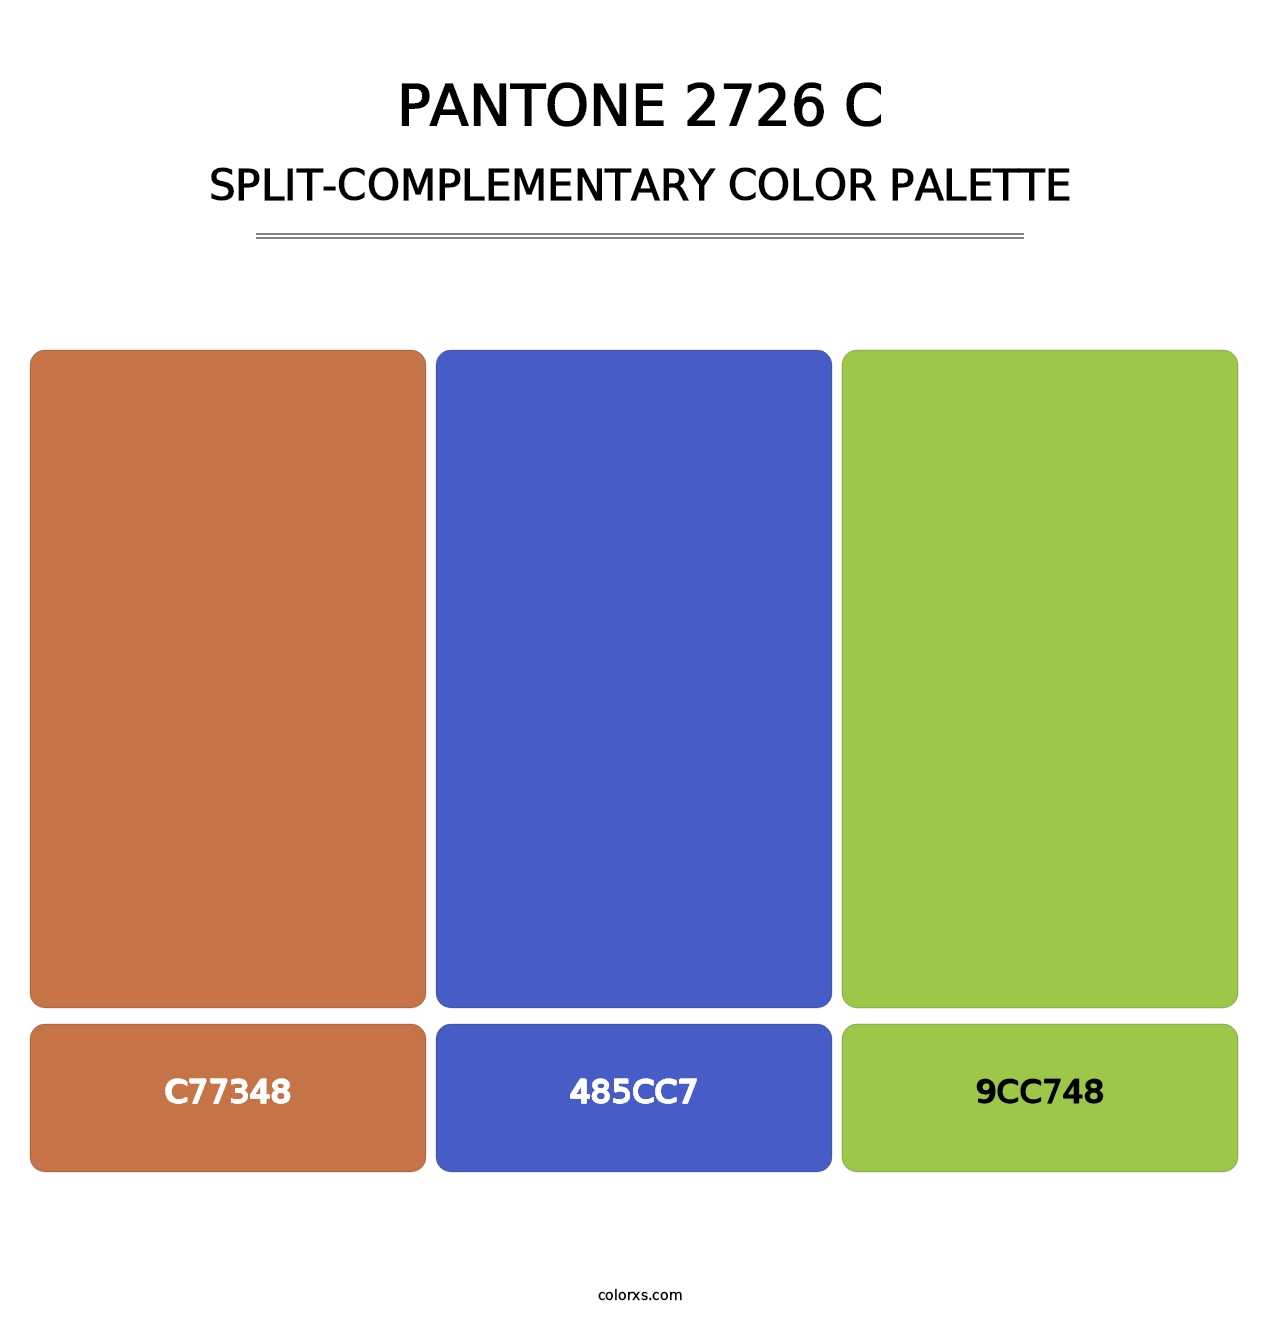 PANTONE 2726 C - Split-Complementary Color Palette